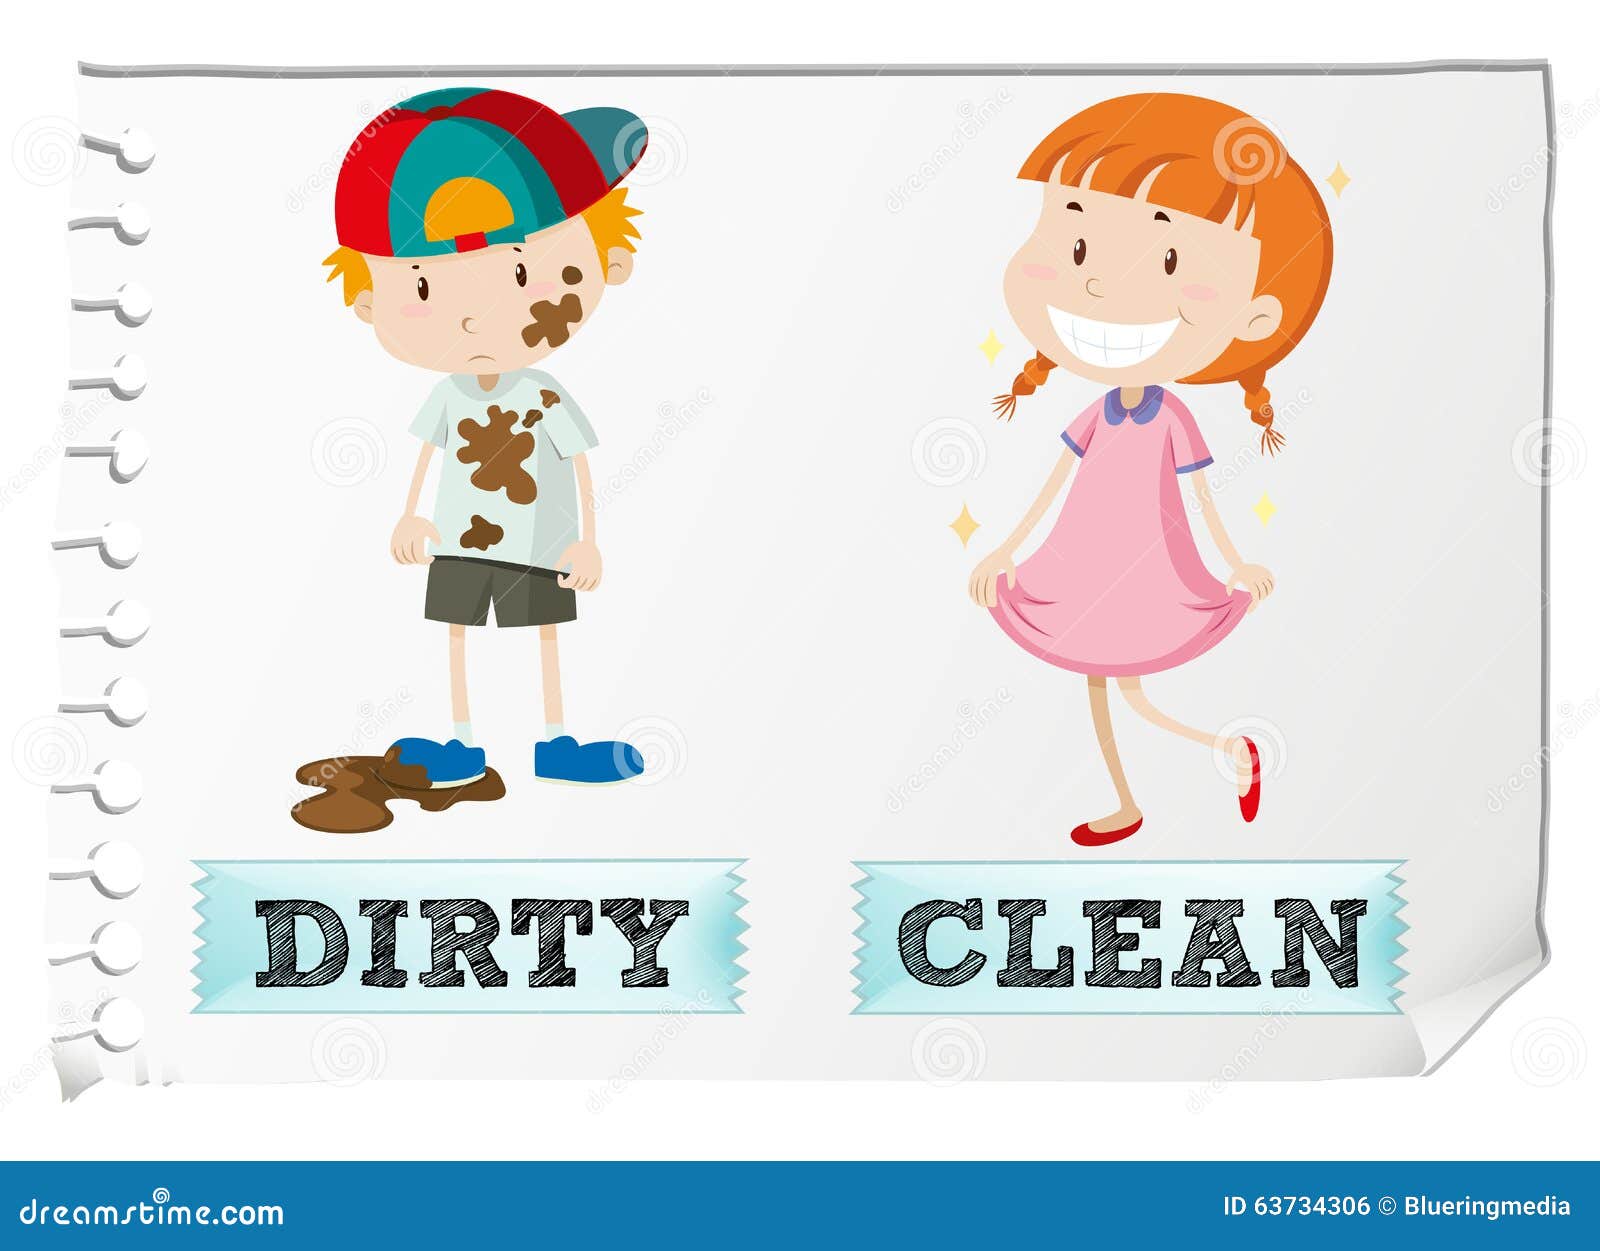 Dirty adjectives. Грязный чистый на английском. Карточки чистый грязный для малышей. Грязный и чистый ребенок. Clean Dirty.